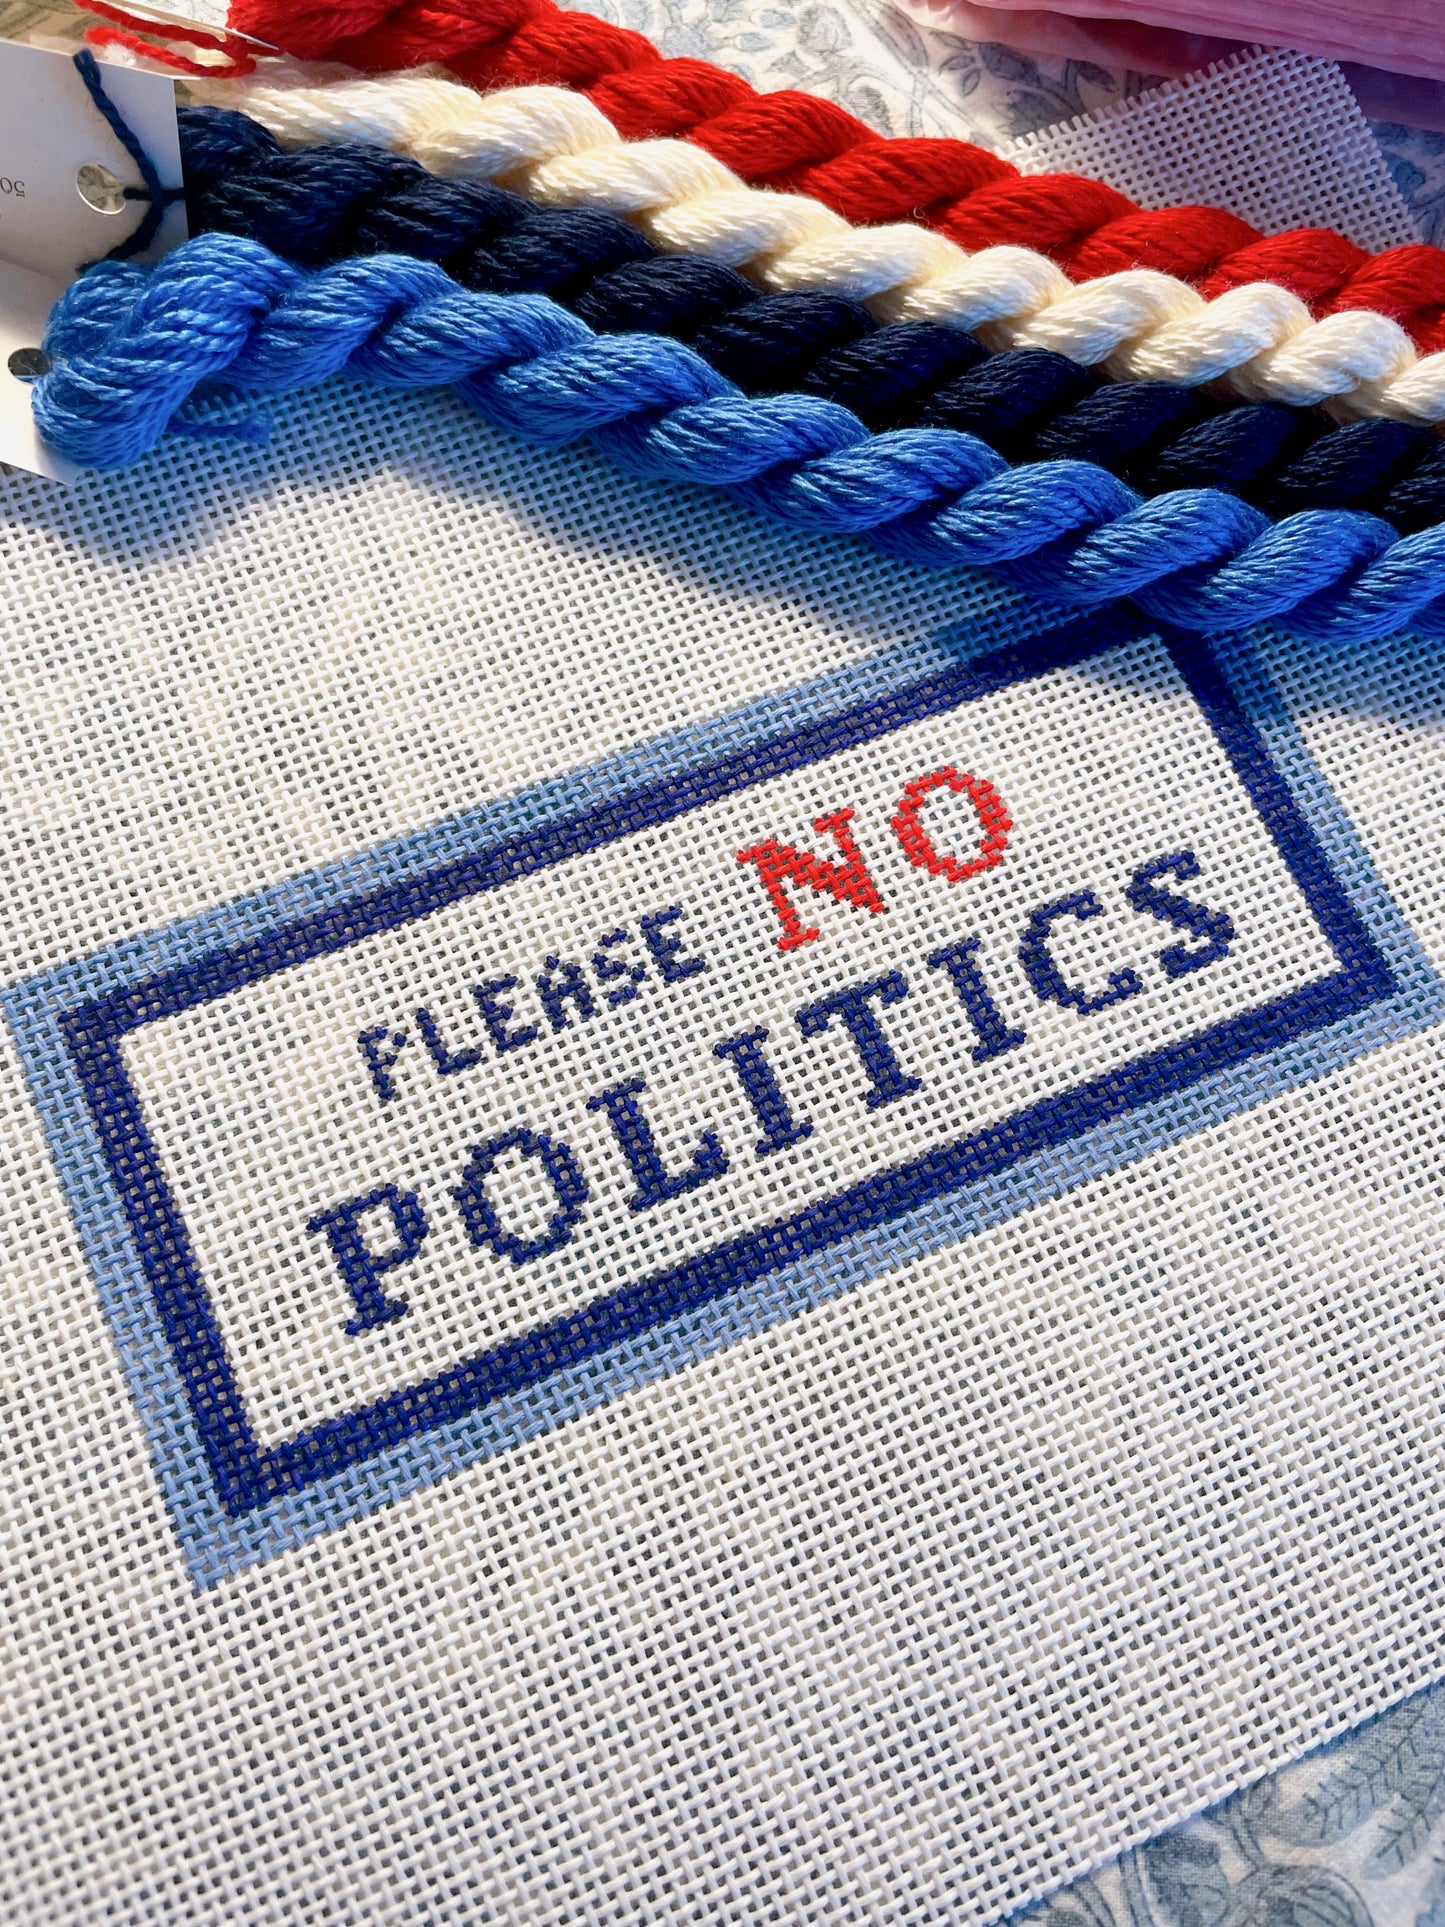 please no politics